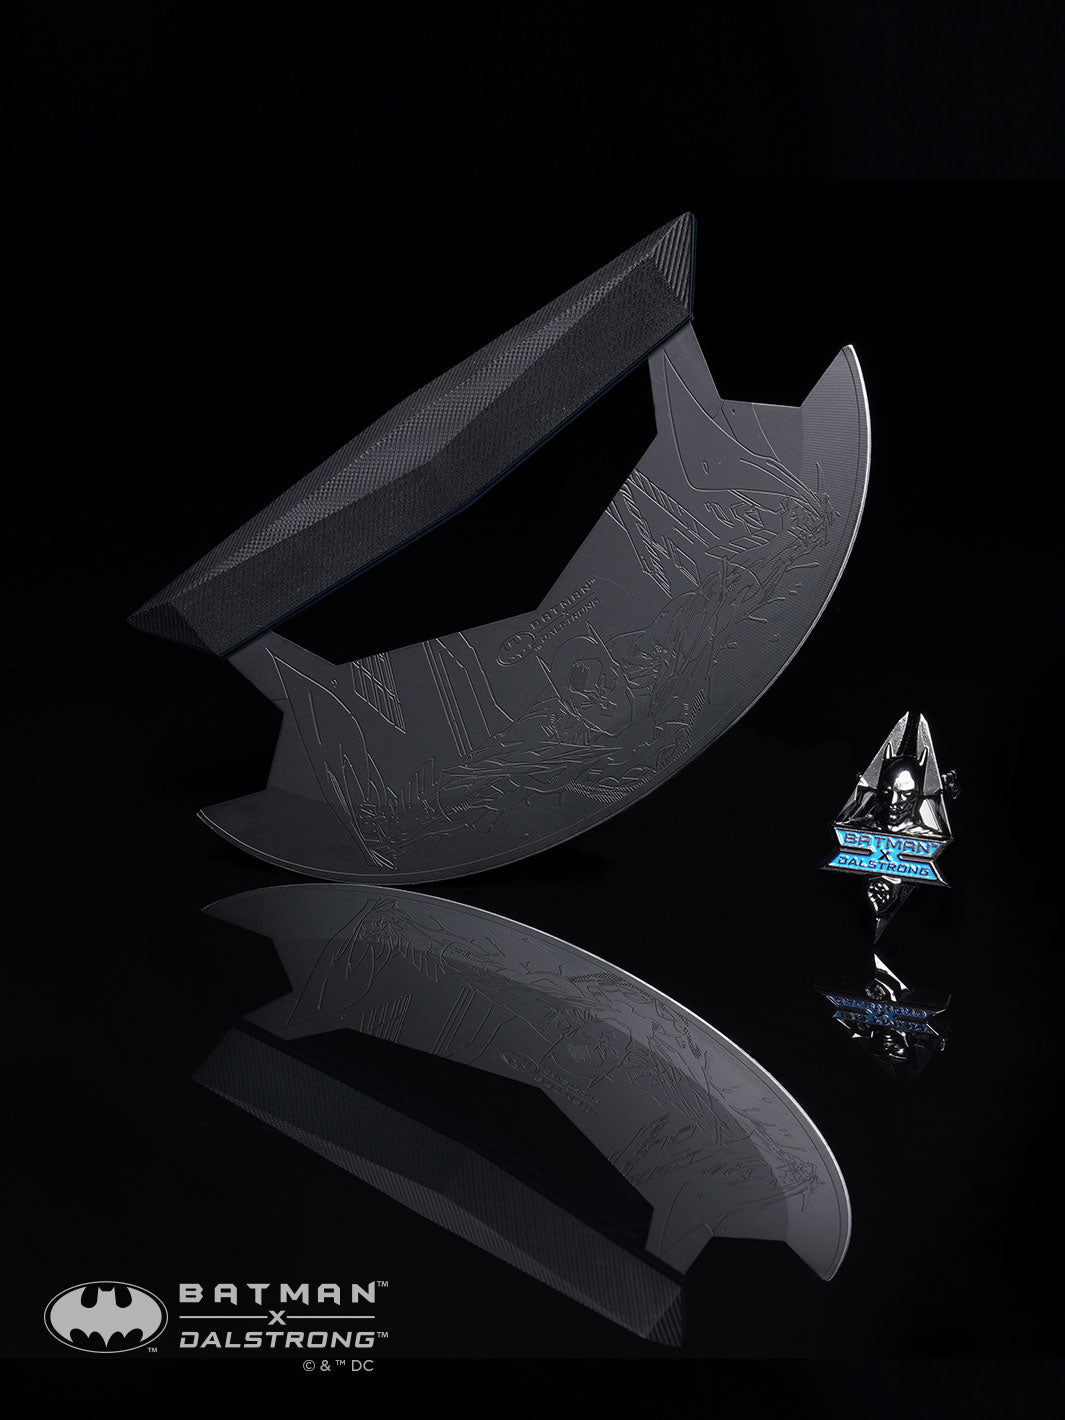 Ulu Knife 7" | BATMAN™ Shadow Black Edition | Dalstrong ©